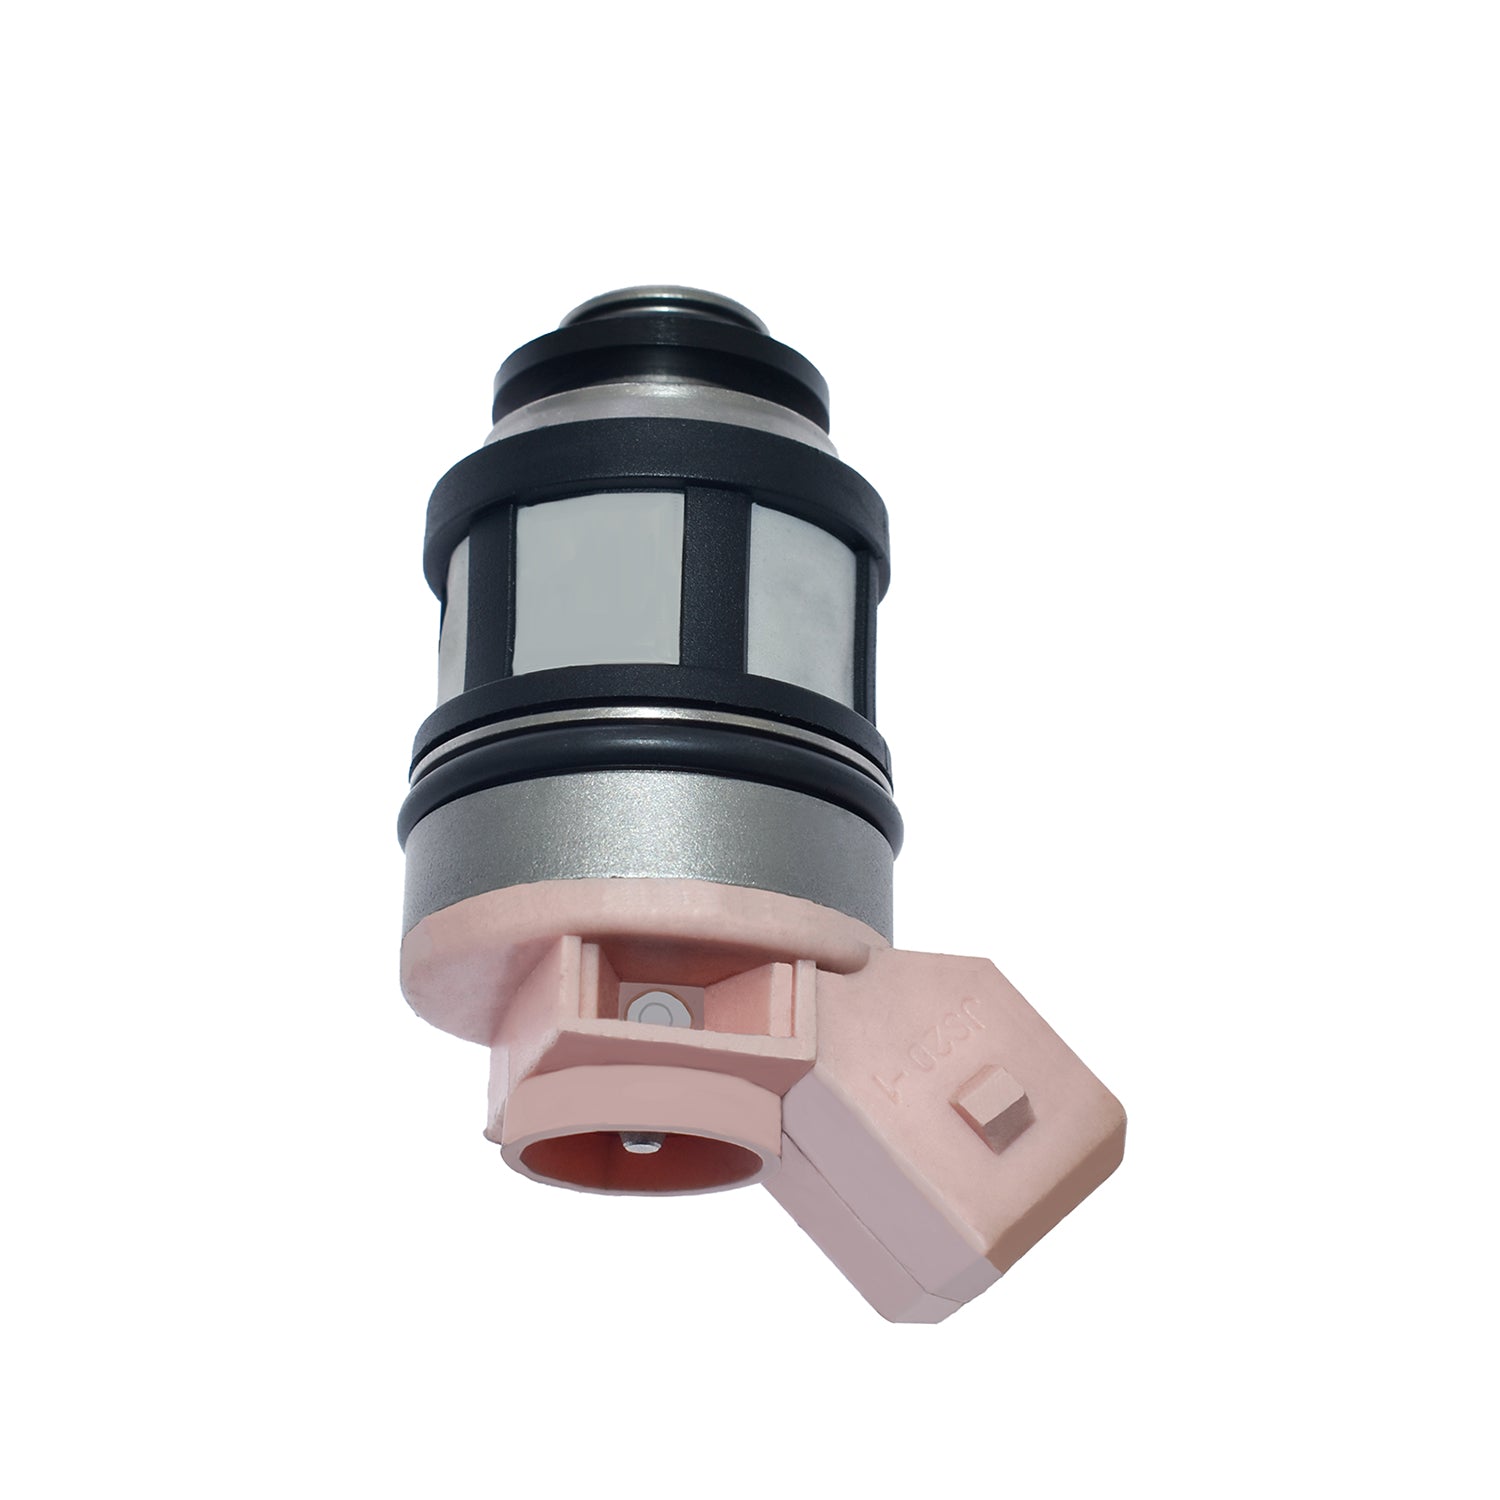 ZNTS 6PCS LOT Fuel Injector for Nissan D21 Pathfinder Quest 3.0L VG30E JS20-1 80147991